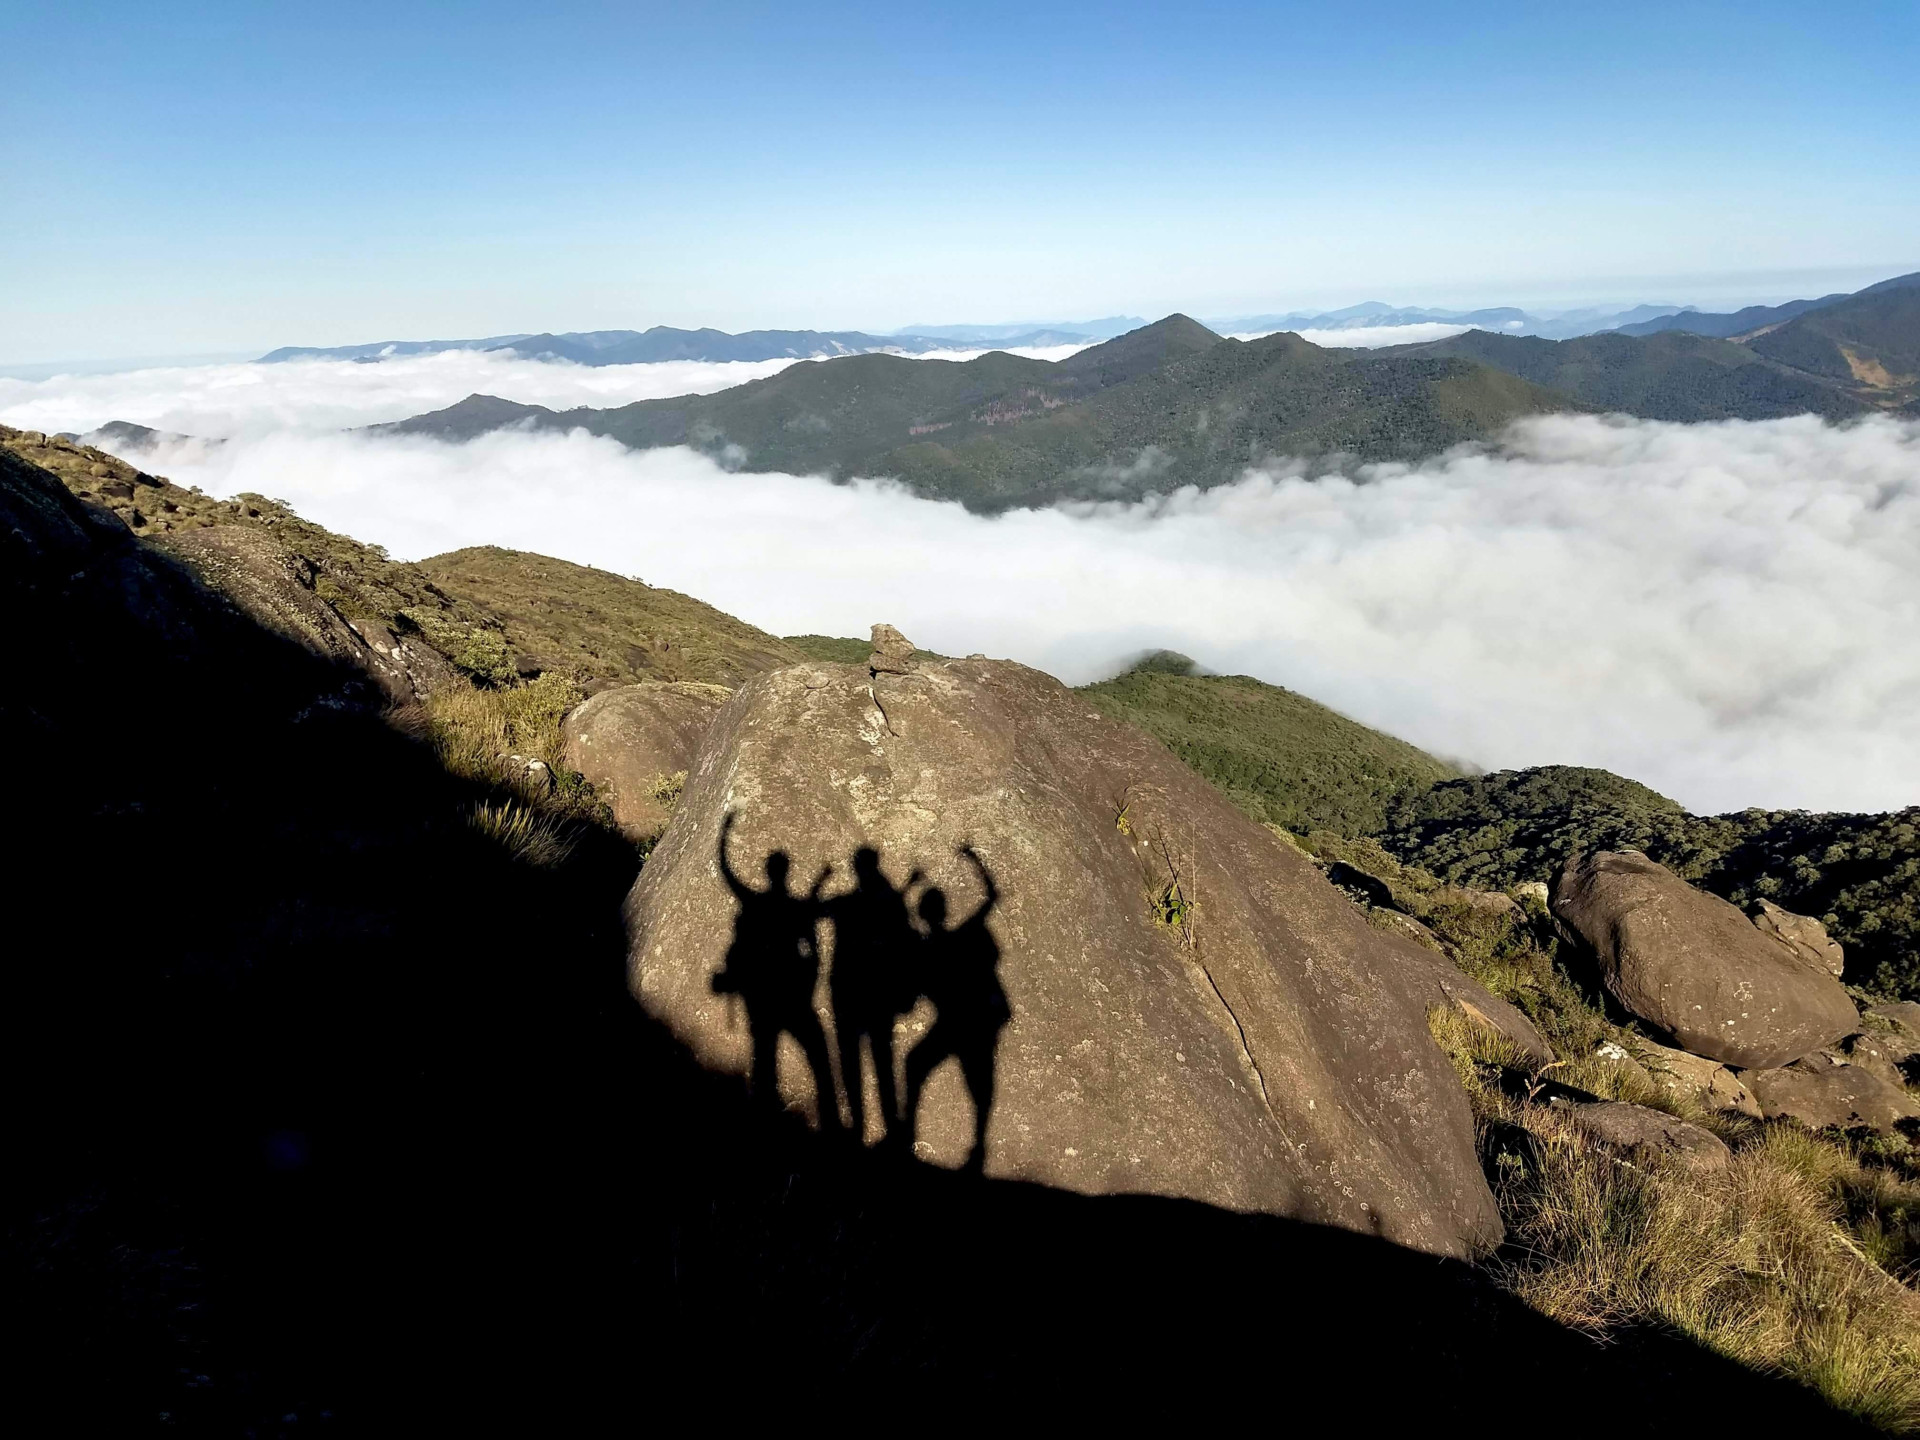 Marque uma trilha no Pico dos Marins em SP e tenha uma das maiores experiências (Imagens: Unsplash)